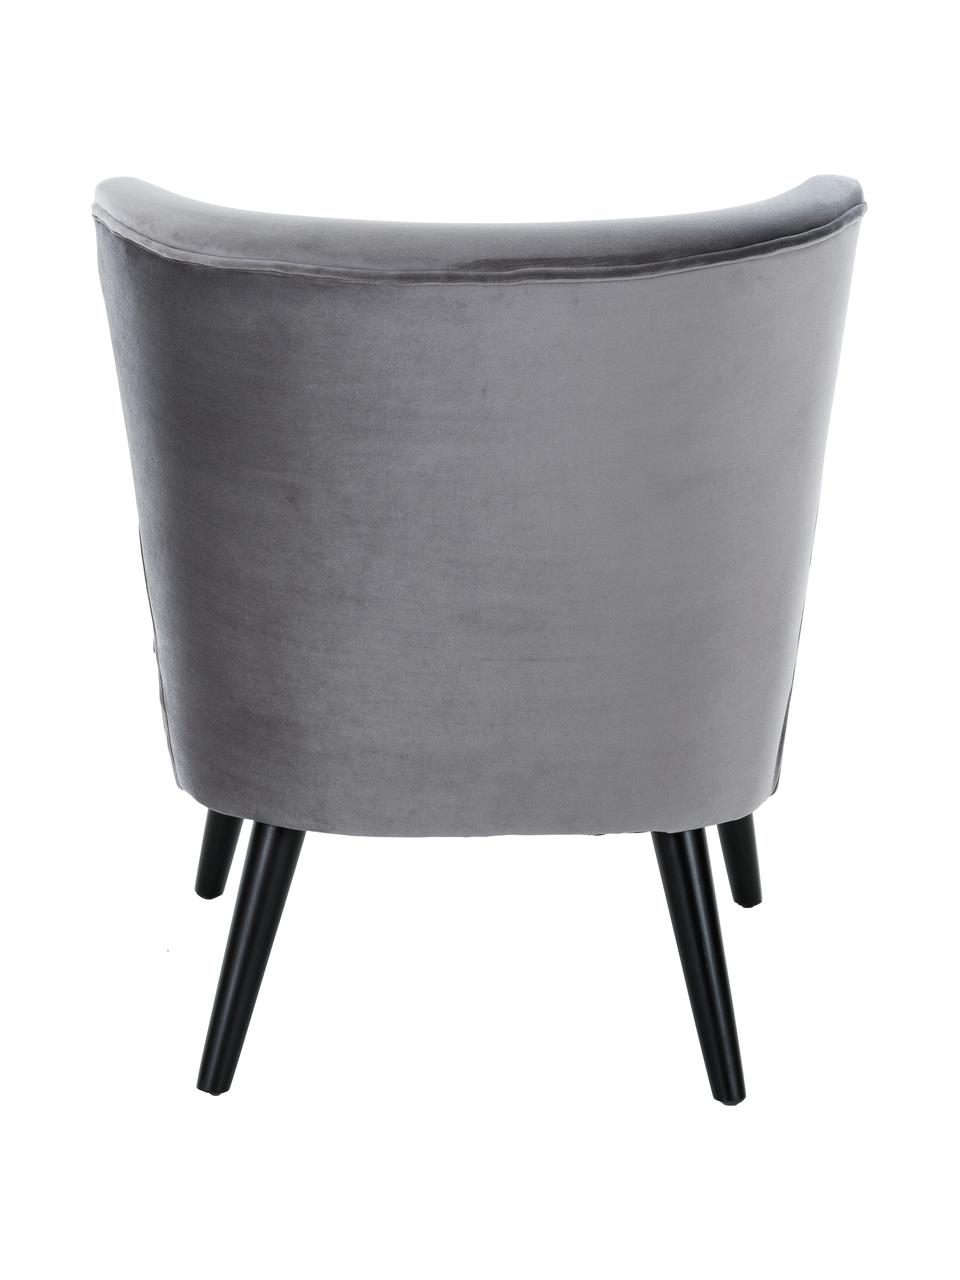 Aksamitne krzesło Robine, Tapicerka: aksamit (poliester) Tkani, Nogi: drewno sosnowe, lakierowa, Szary, S 63 x G 73 cm